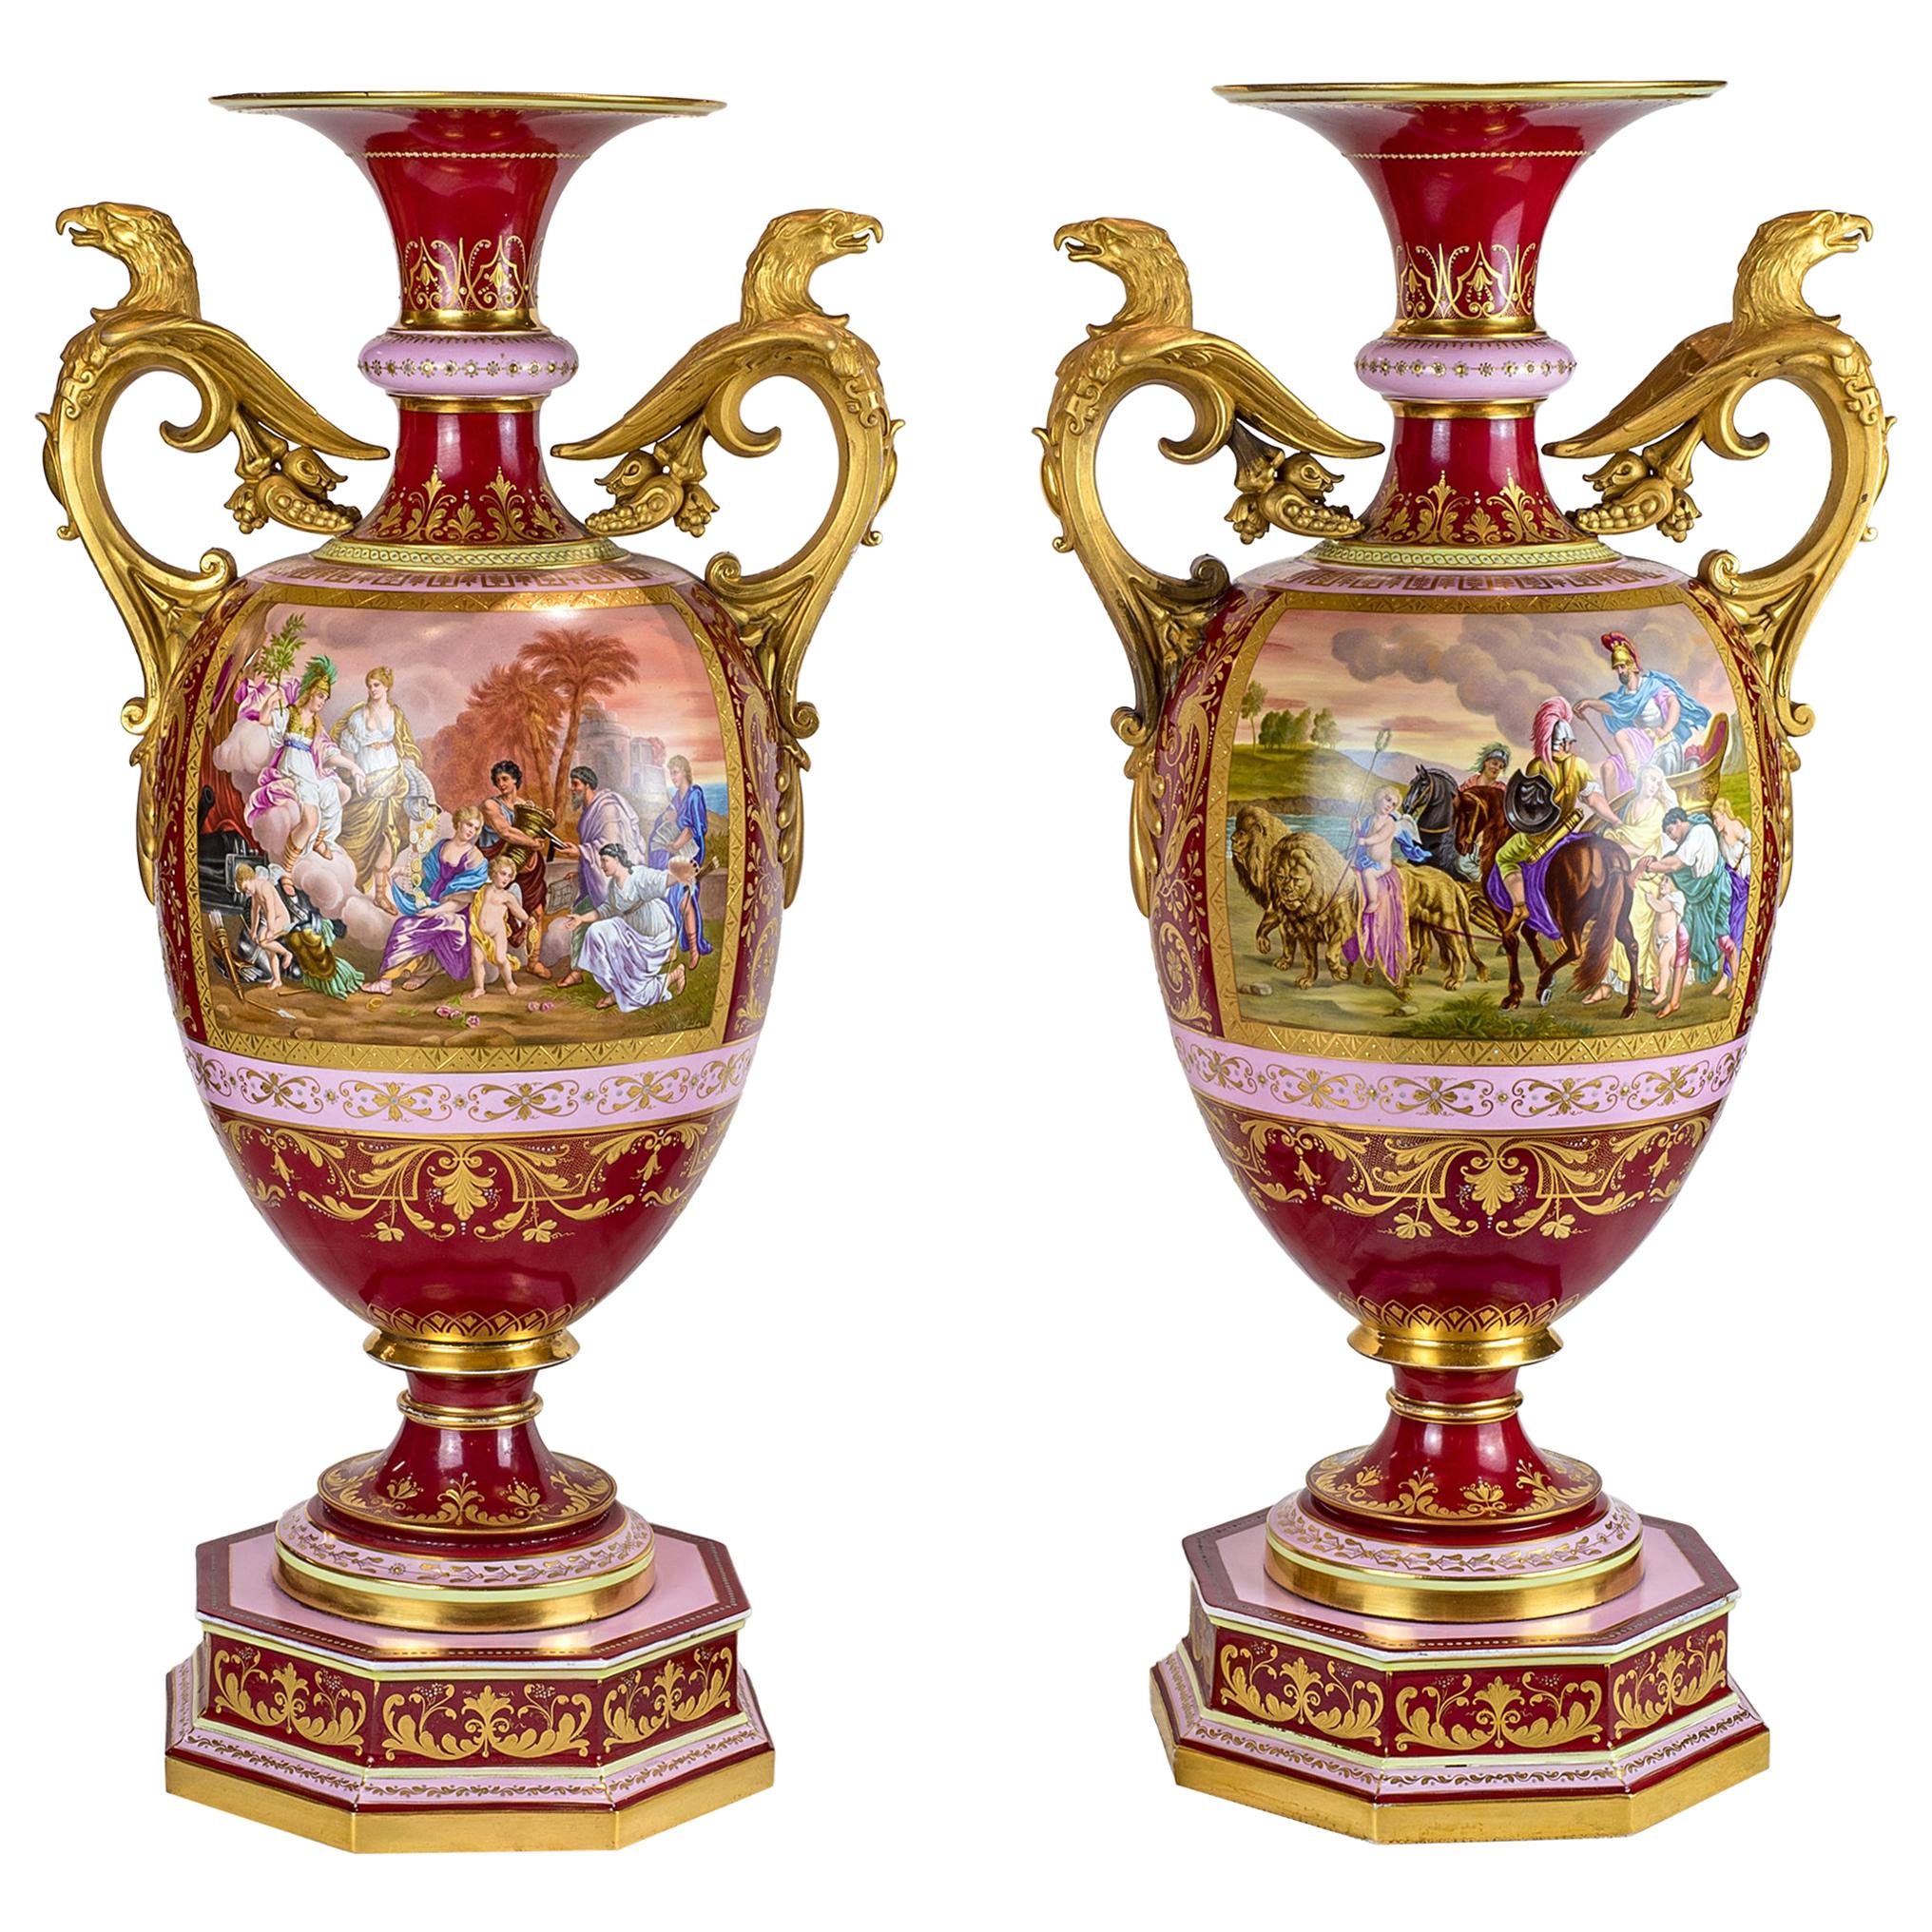 Prächtiges Paar vergoldeter Bronze-Porzellanurnen im königlichen Wiener Stil